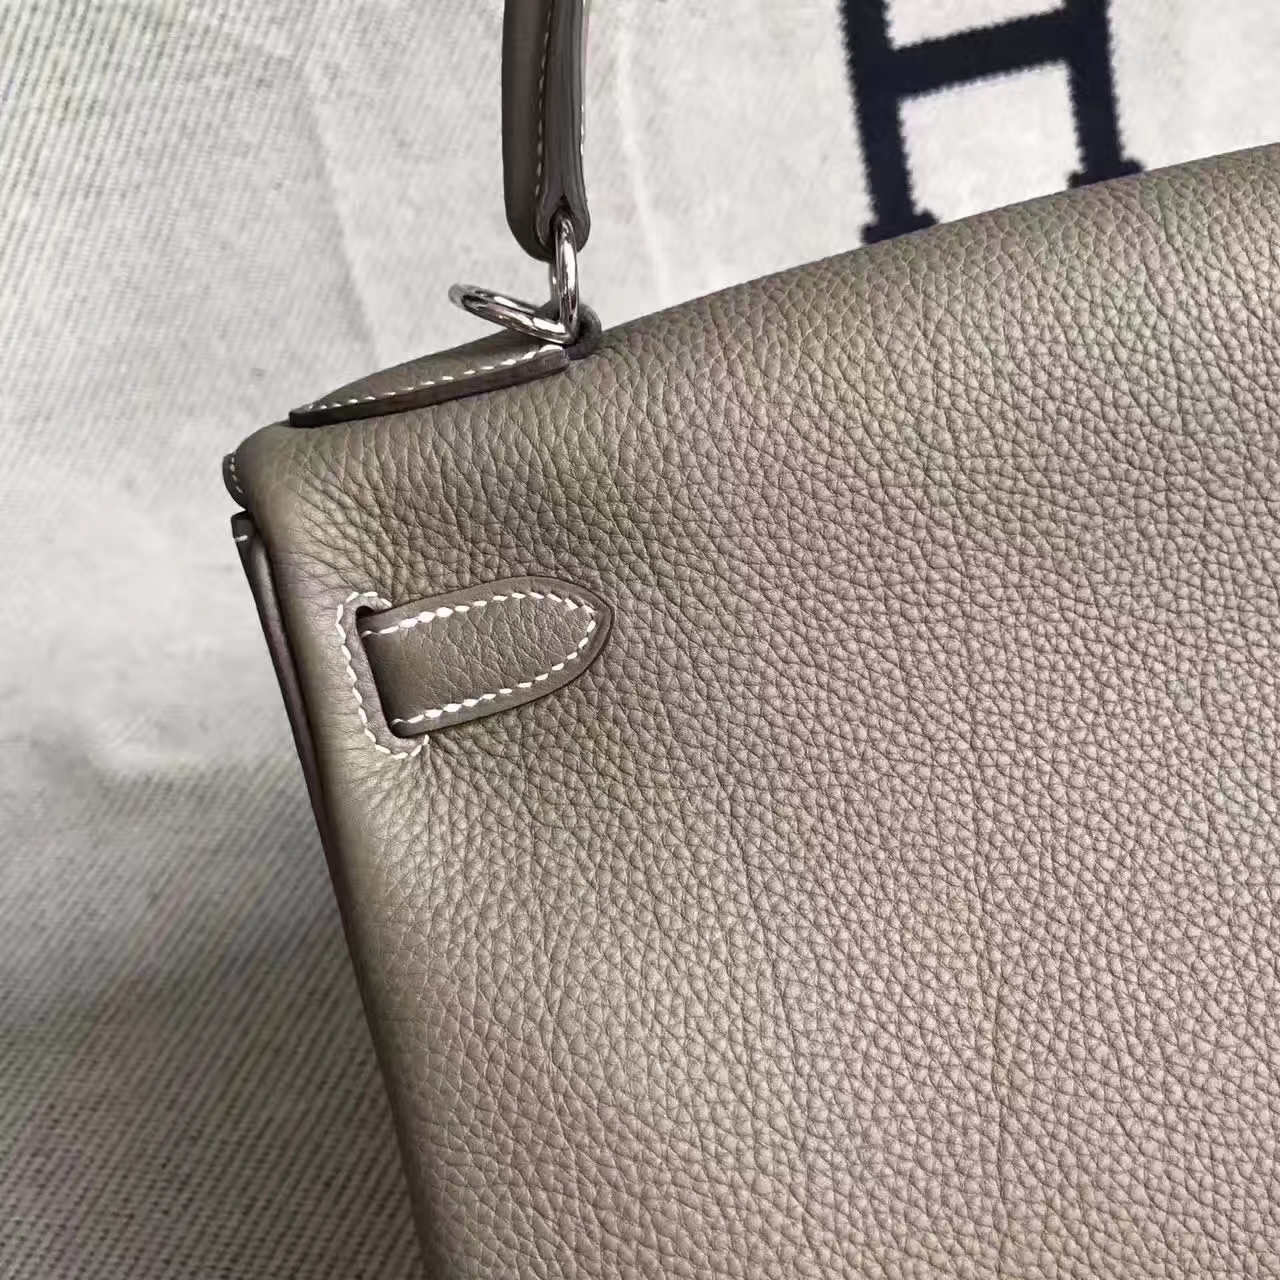 Hand Stitching Hermes C18 Etoupe Grey Togo Leather Retourne Kelly Bag 28CM